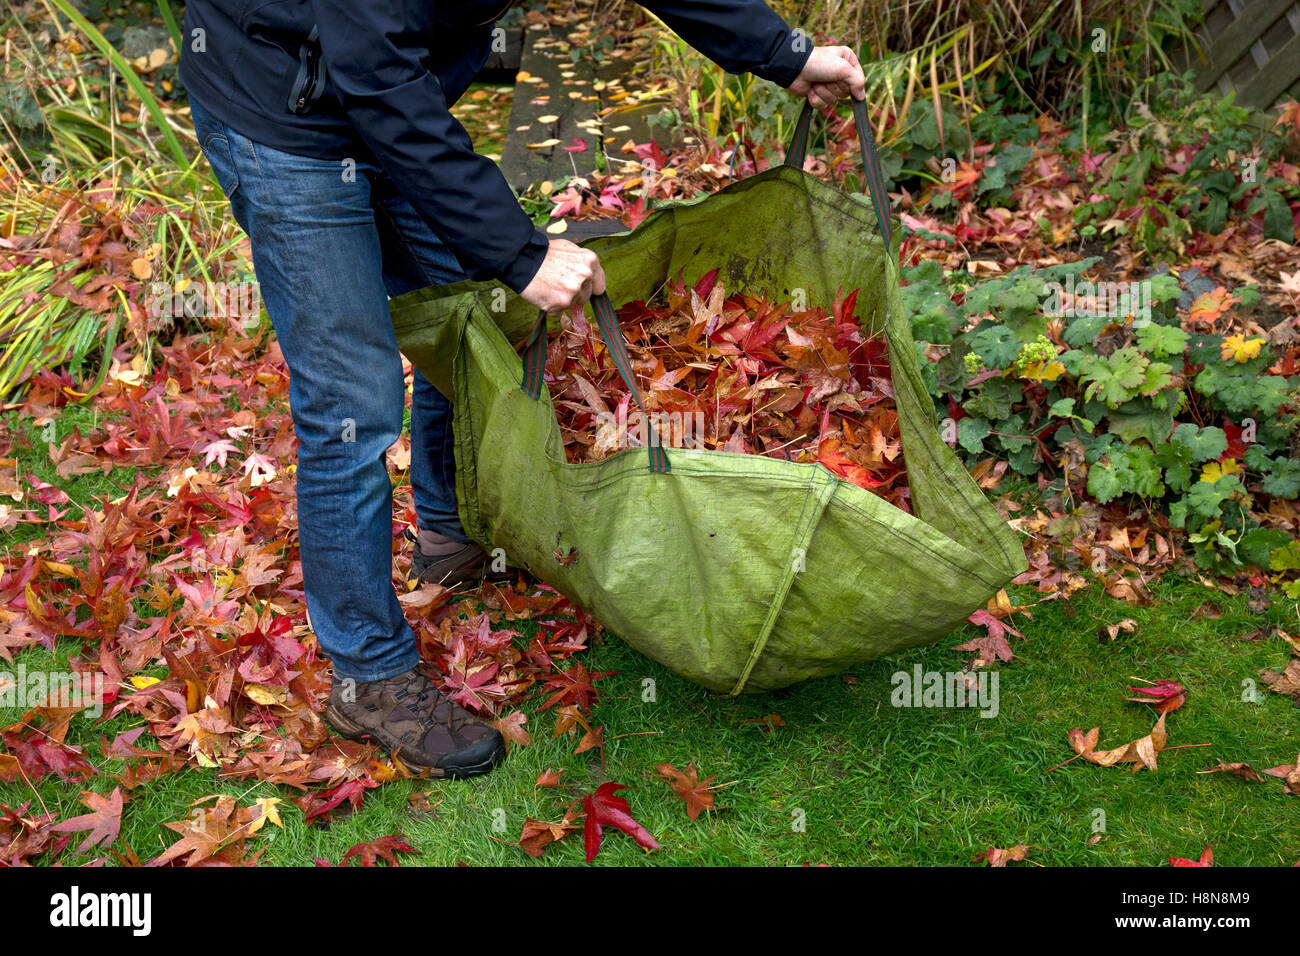 Déchets de jardin sac plein de feuilles à l'automne Jardin Anglais Banque D'Images